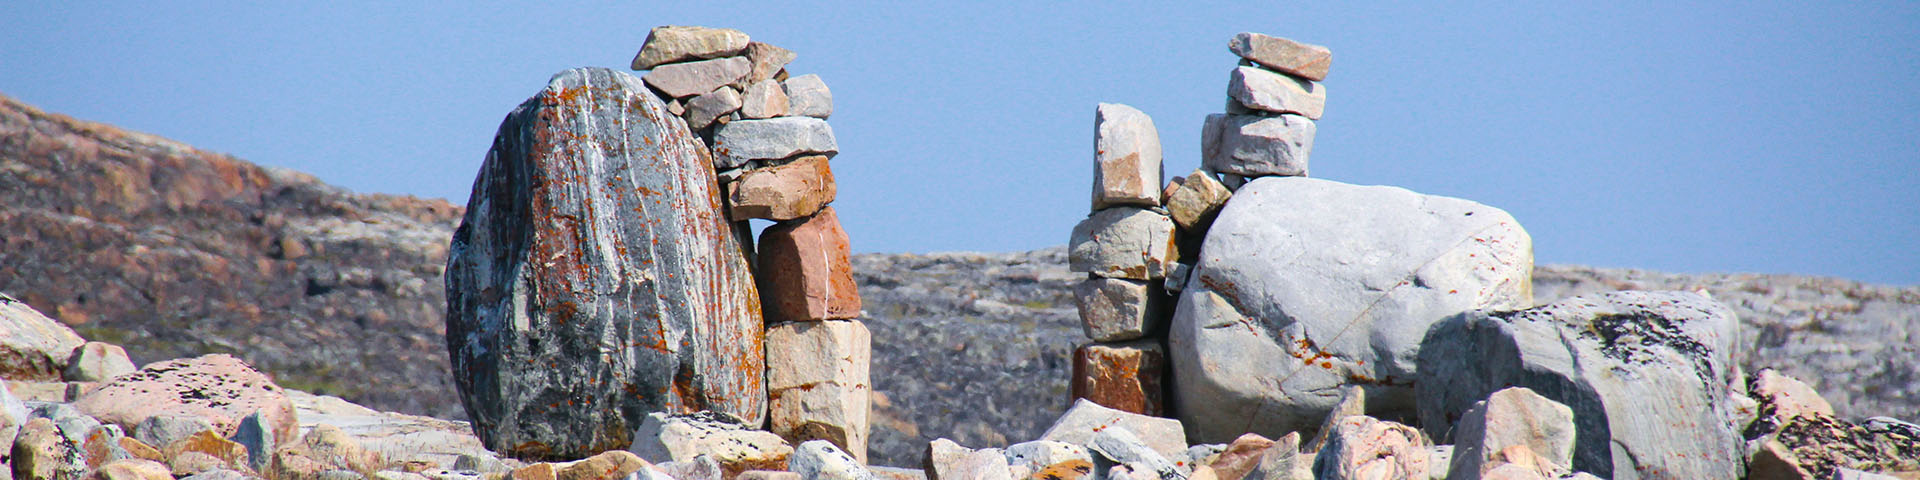 Deux structures rocheuses archéologiques dans un paysage rocheux. 